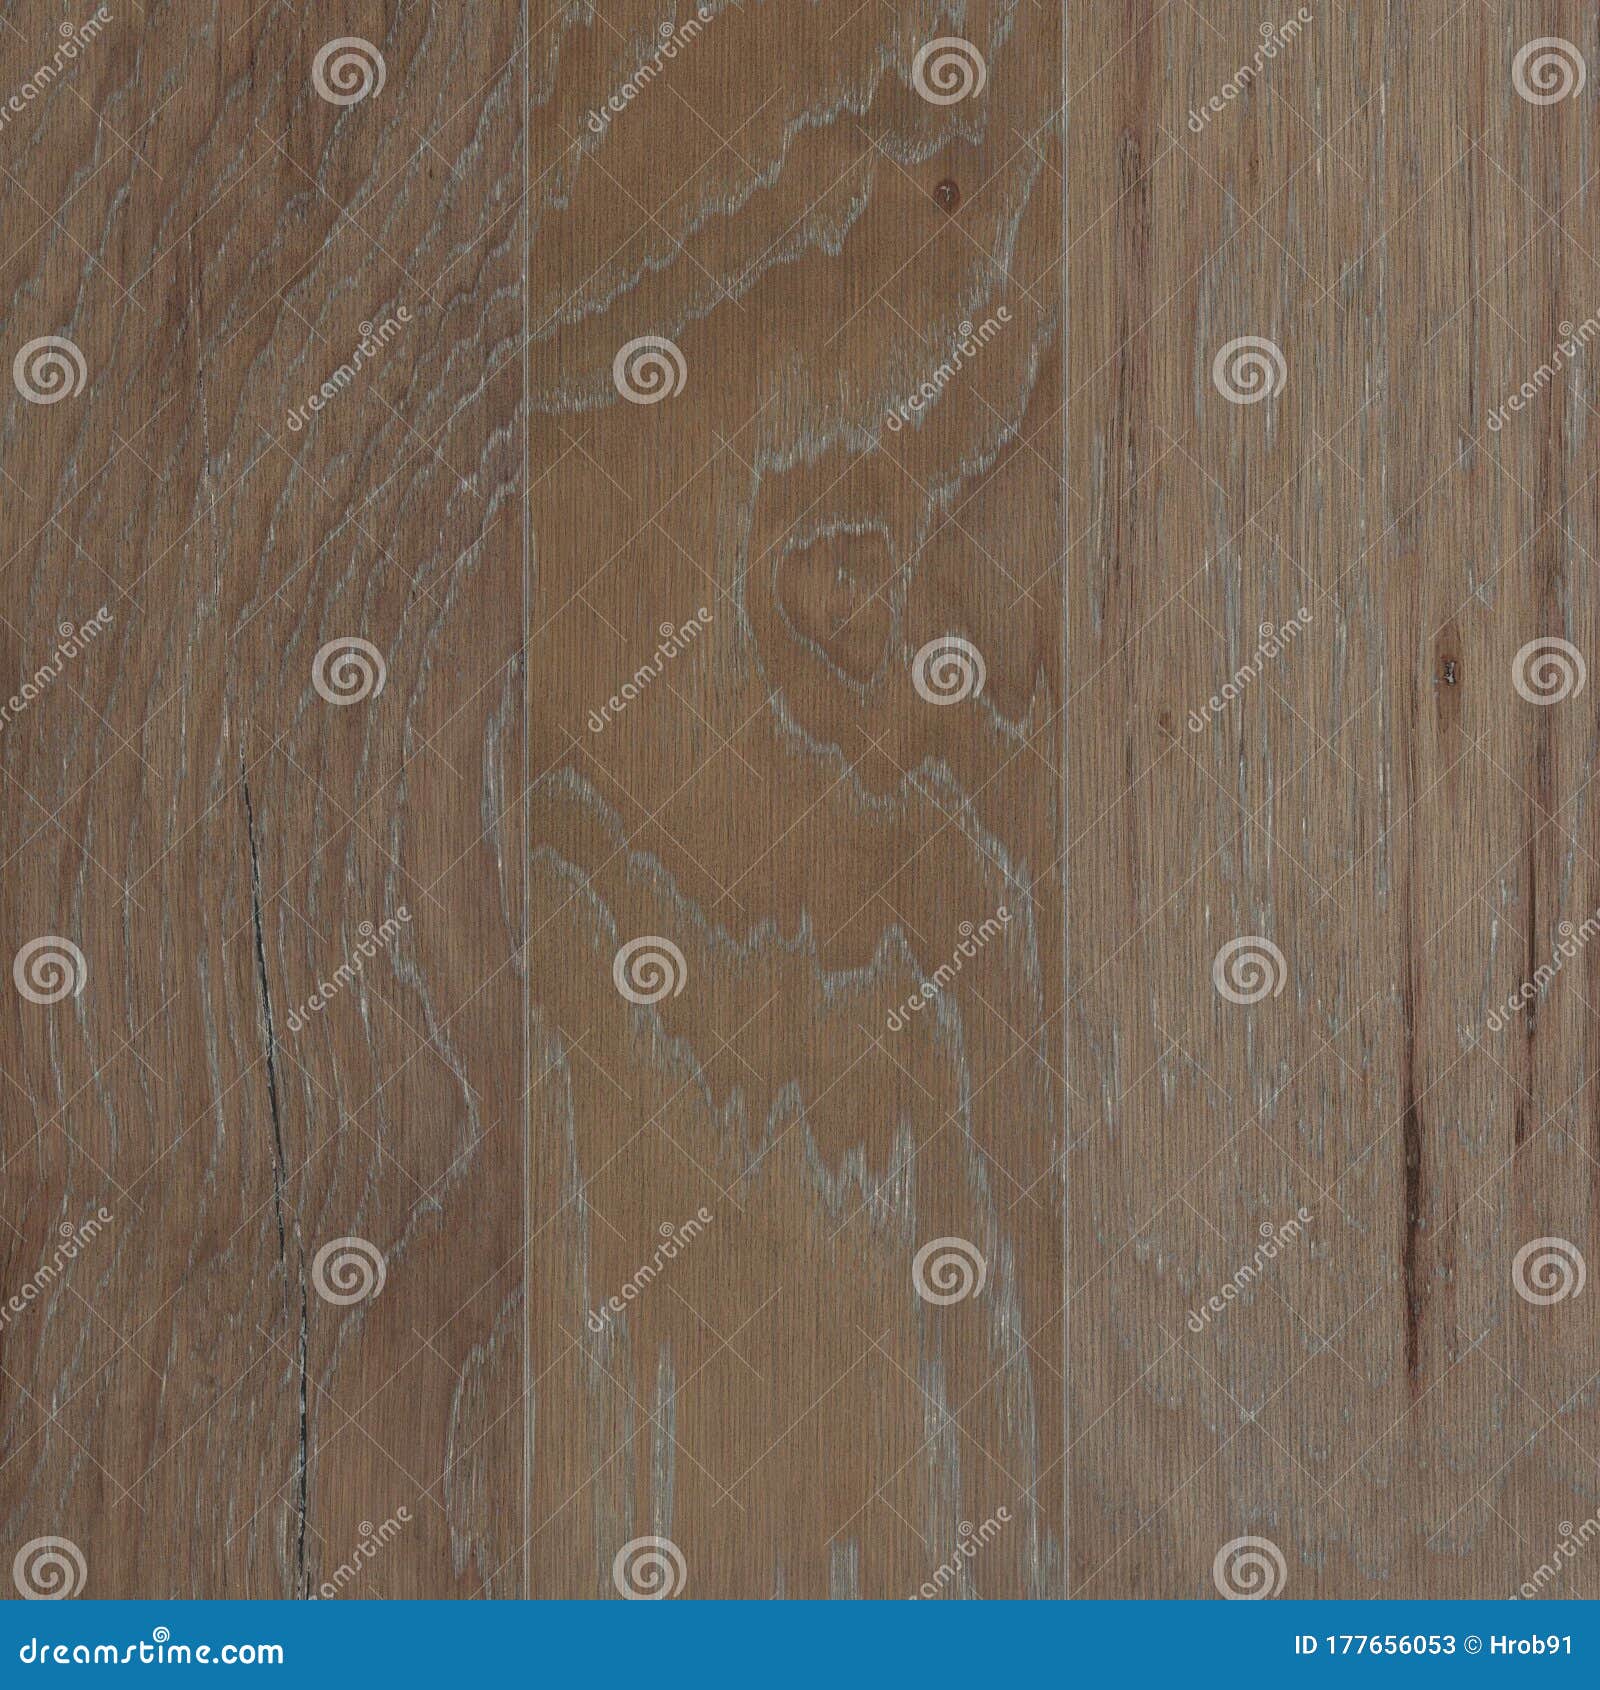 flooring engineered hardwood texture tileable